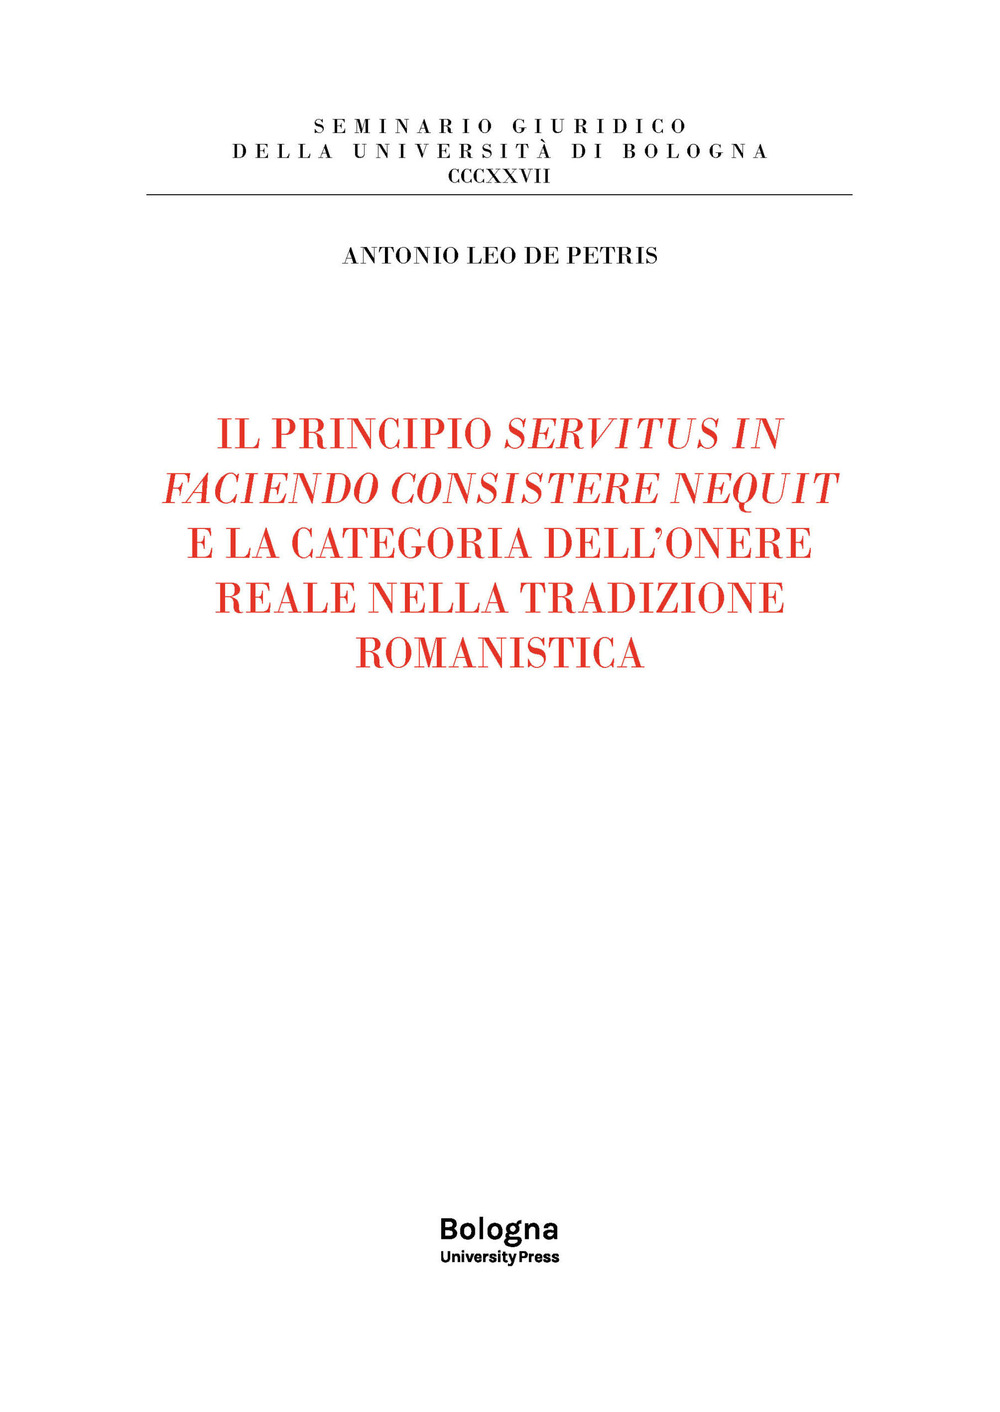 Il principio servitus in faciendo consistere nequit e la categoria dell'onere reale nella tradizione romanistica